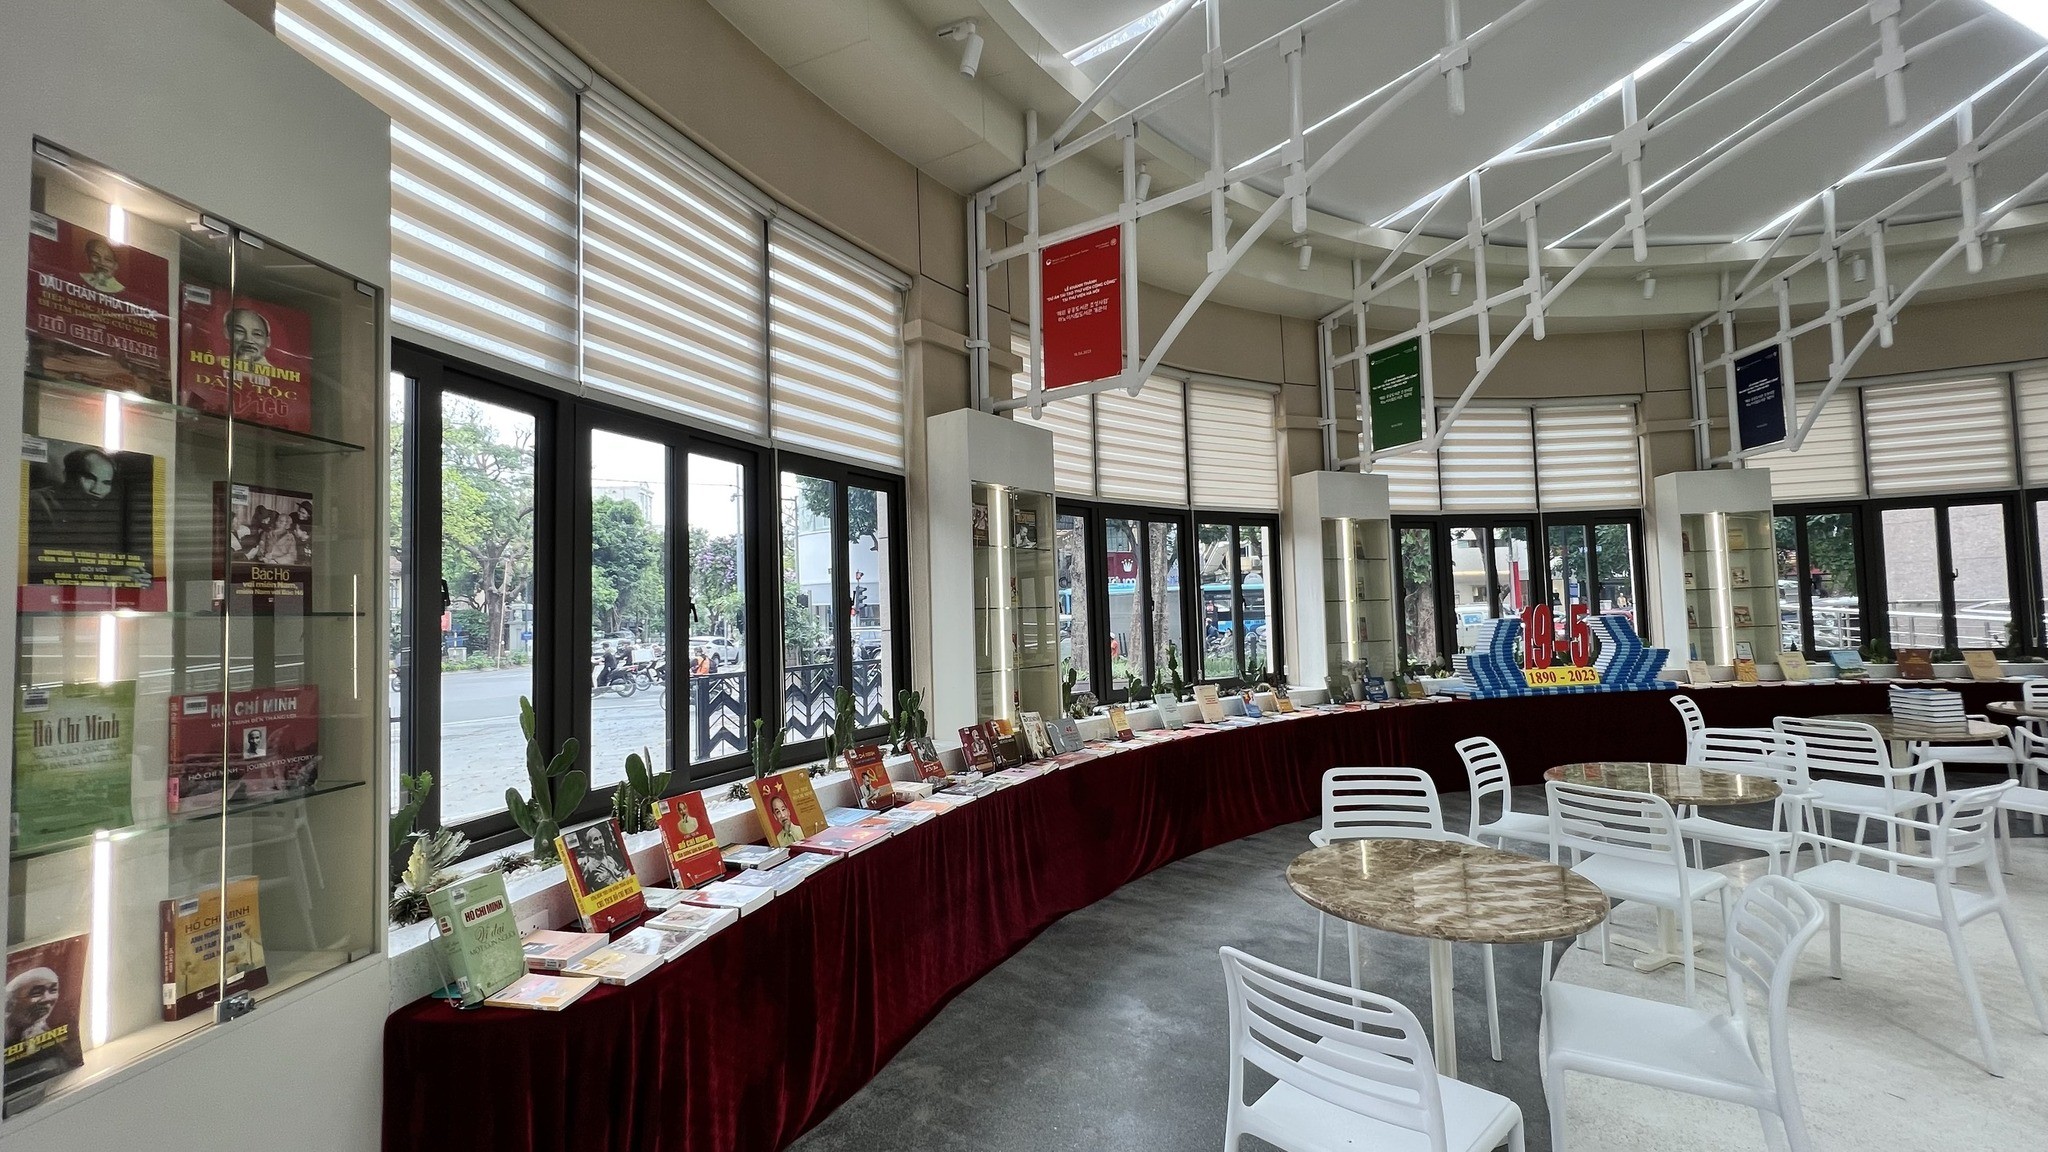 Thư viện Hà Nội với chuyên đề “Việt Nam đẹp nhất tên Người” kỷ niệm 133 năm ngày sinh Chủ tịch Hồ Chí Minh